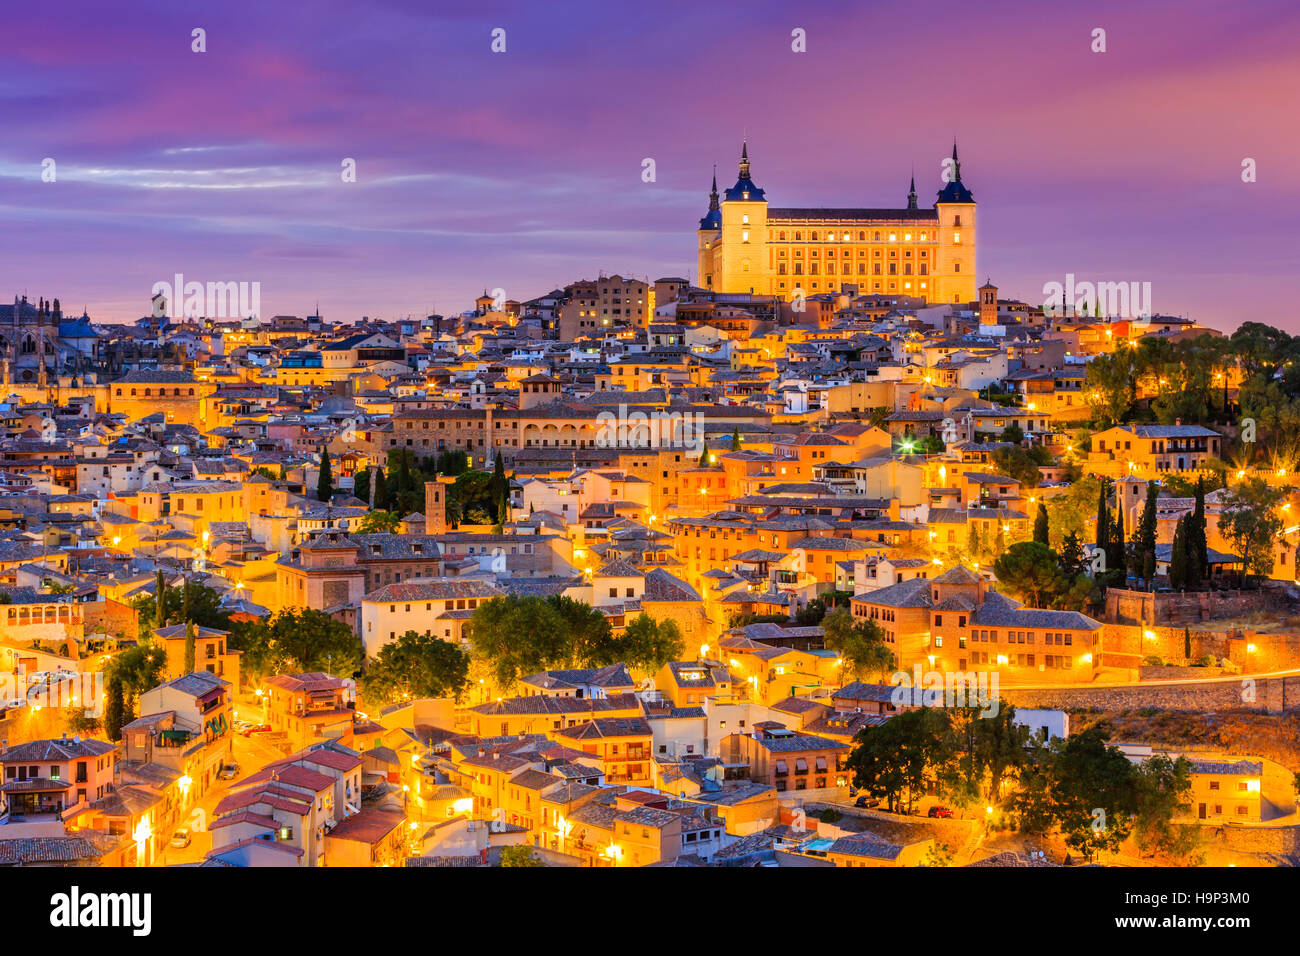 Toledo, Spagna. Vista panoramica della città vecchia e il suo Alcazar(Royal Palace). Foto Stock